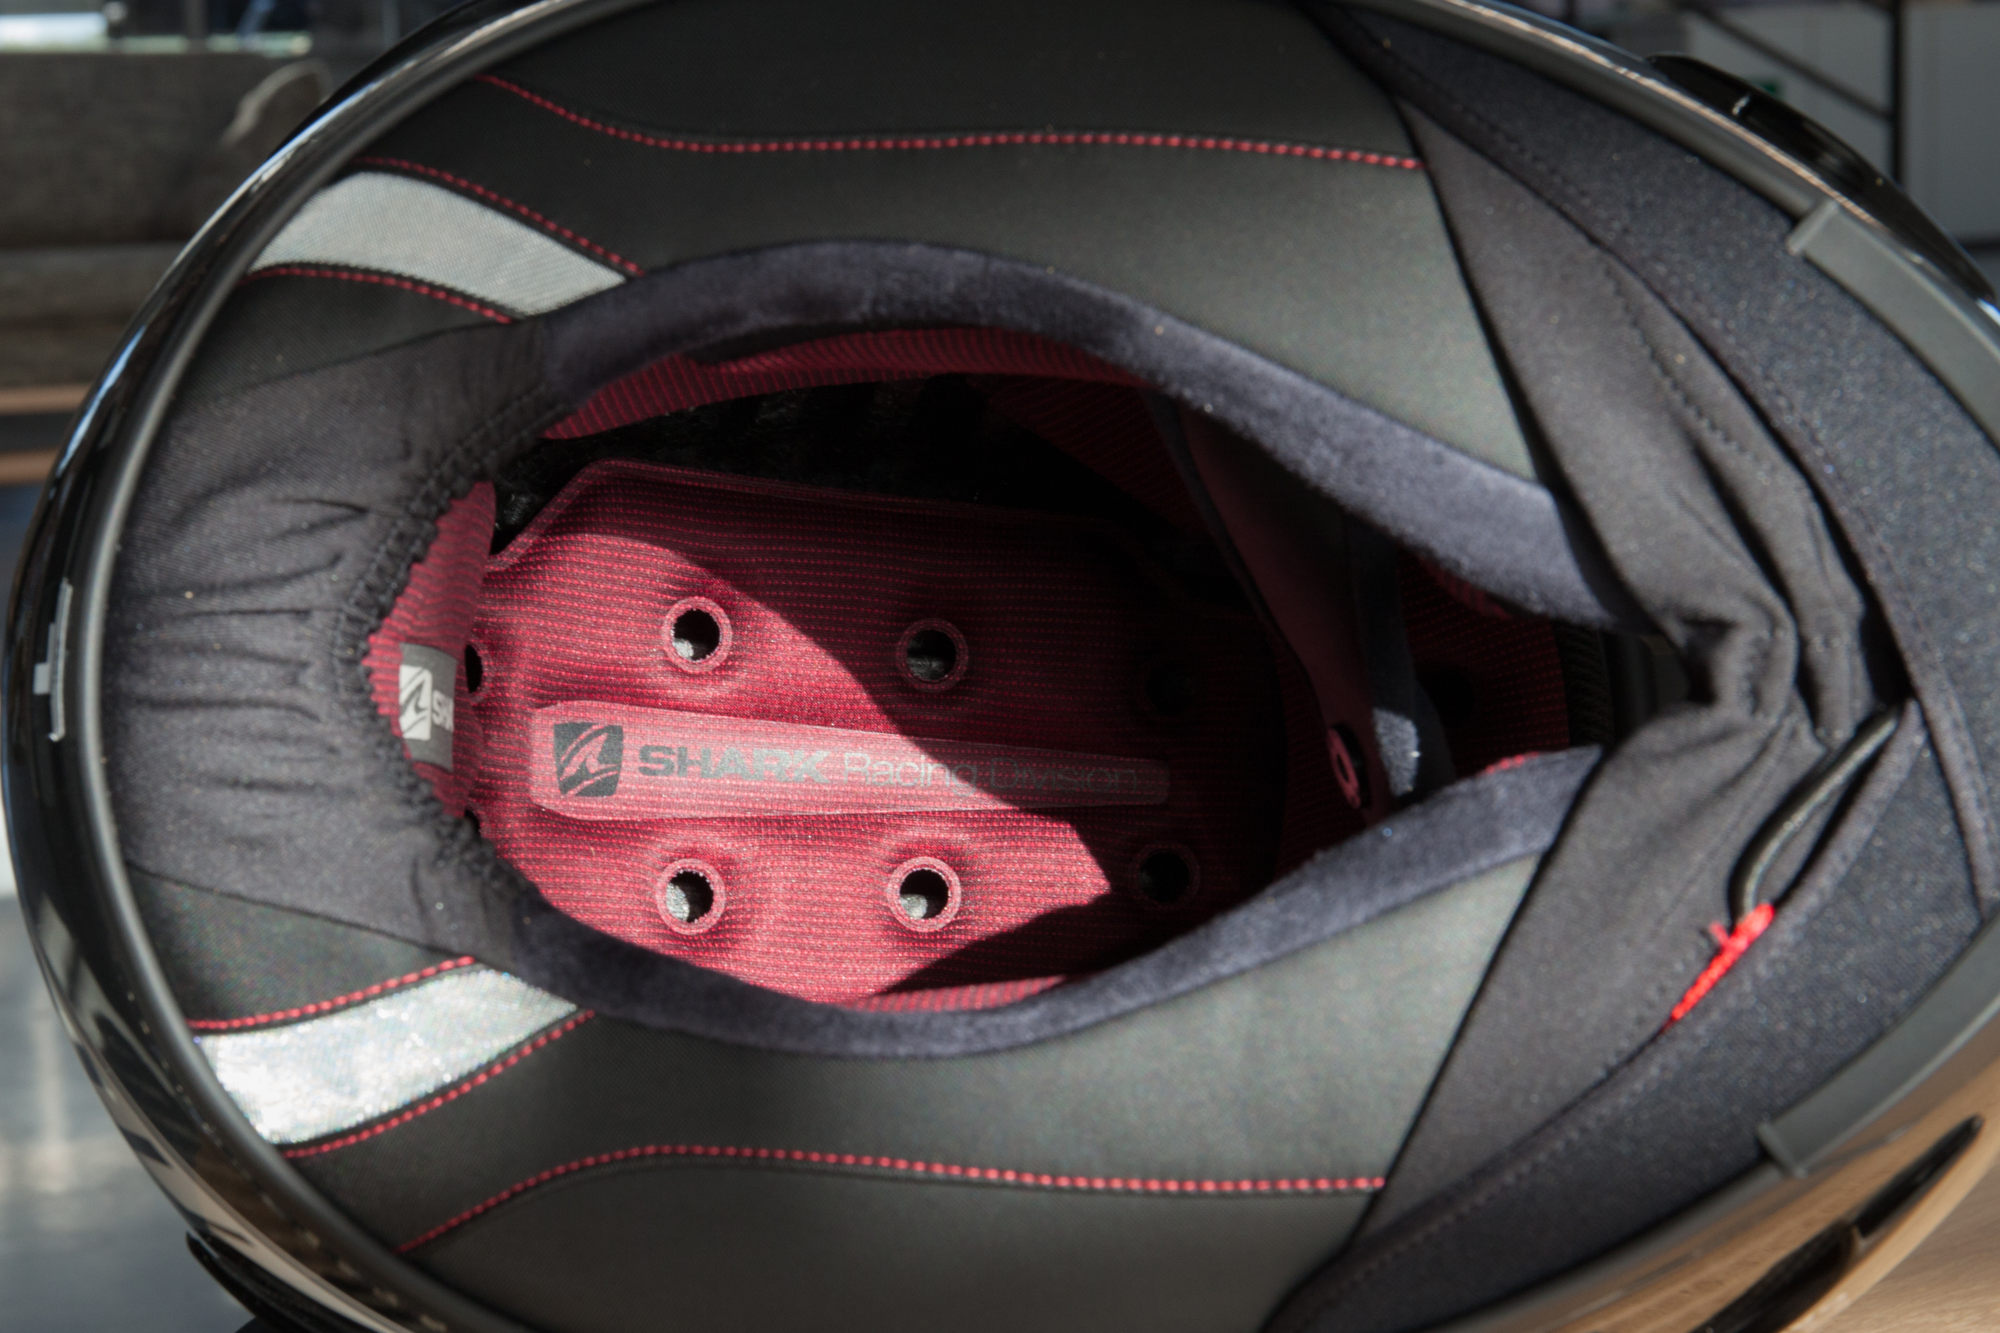 El interior del Shark Race-R Pro, ventilado y cómodo. Fijaos en la barbillera ajustable.